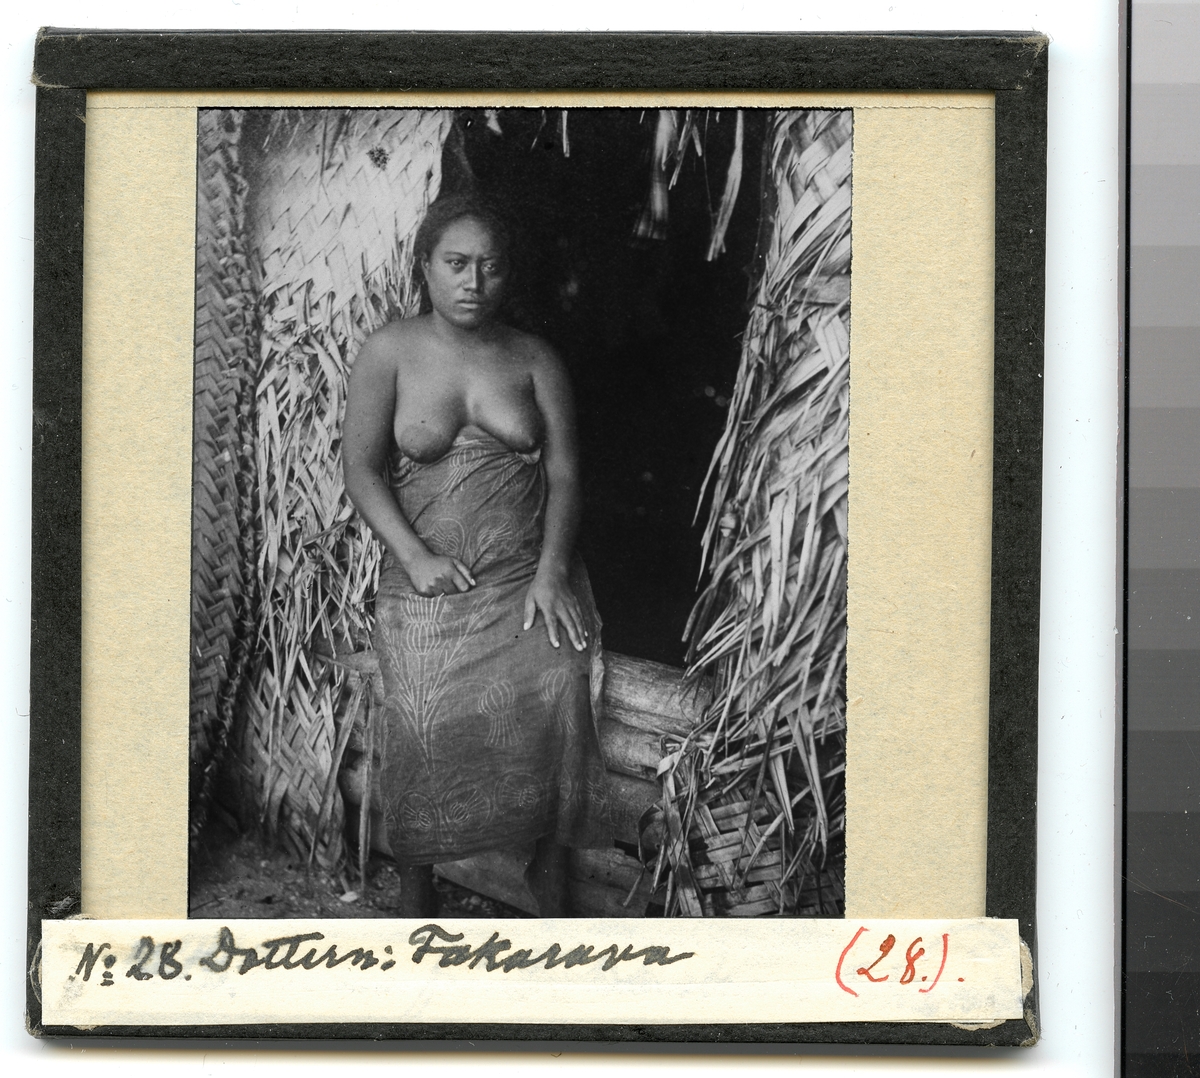 Bilden visar en kvinna från ursprungsbefolkningen på Fakarava klädd i en traditionell dräkt som står framför en hydda. Enlig Etnografiska museets bildinformation är det dottern Taroi.